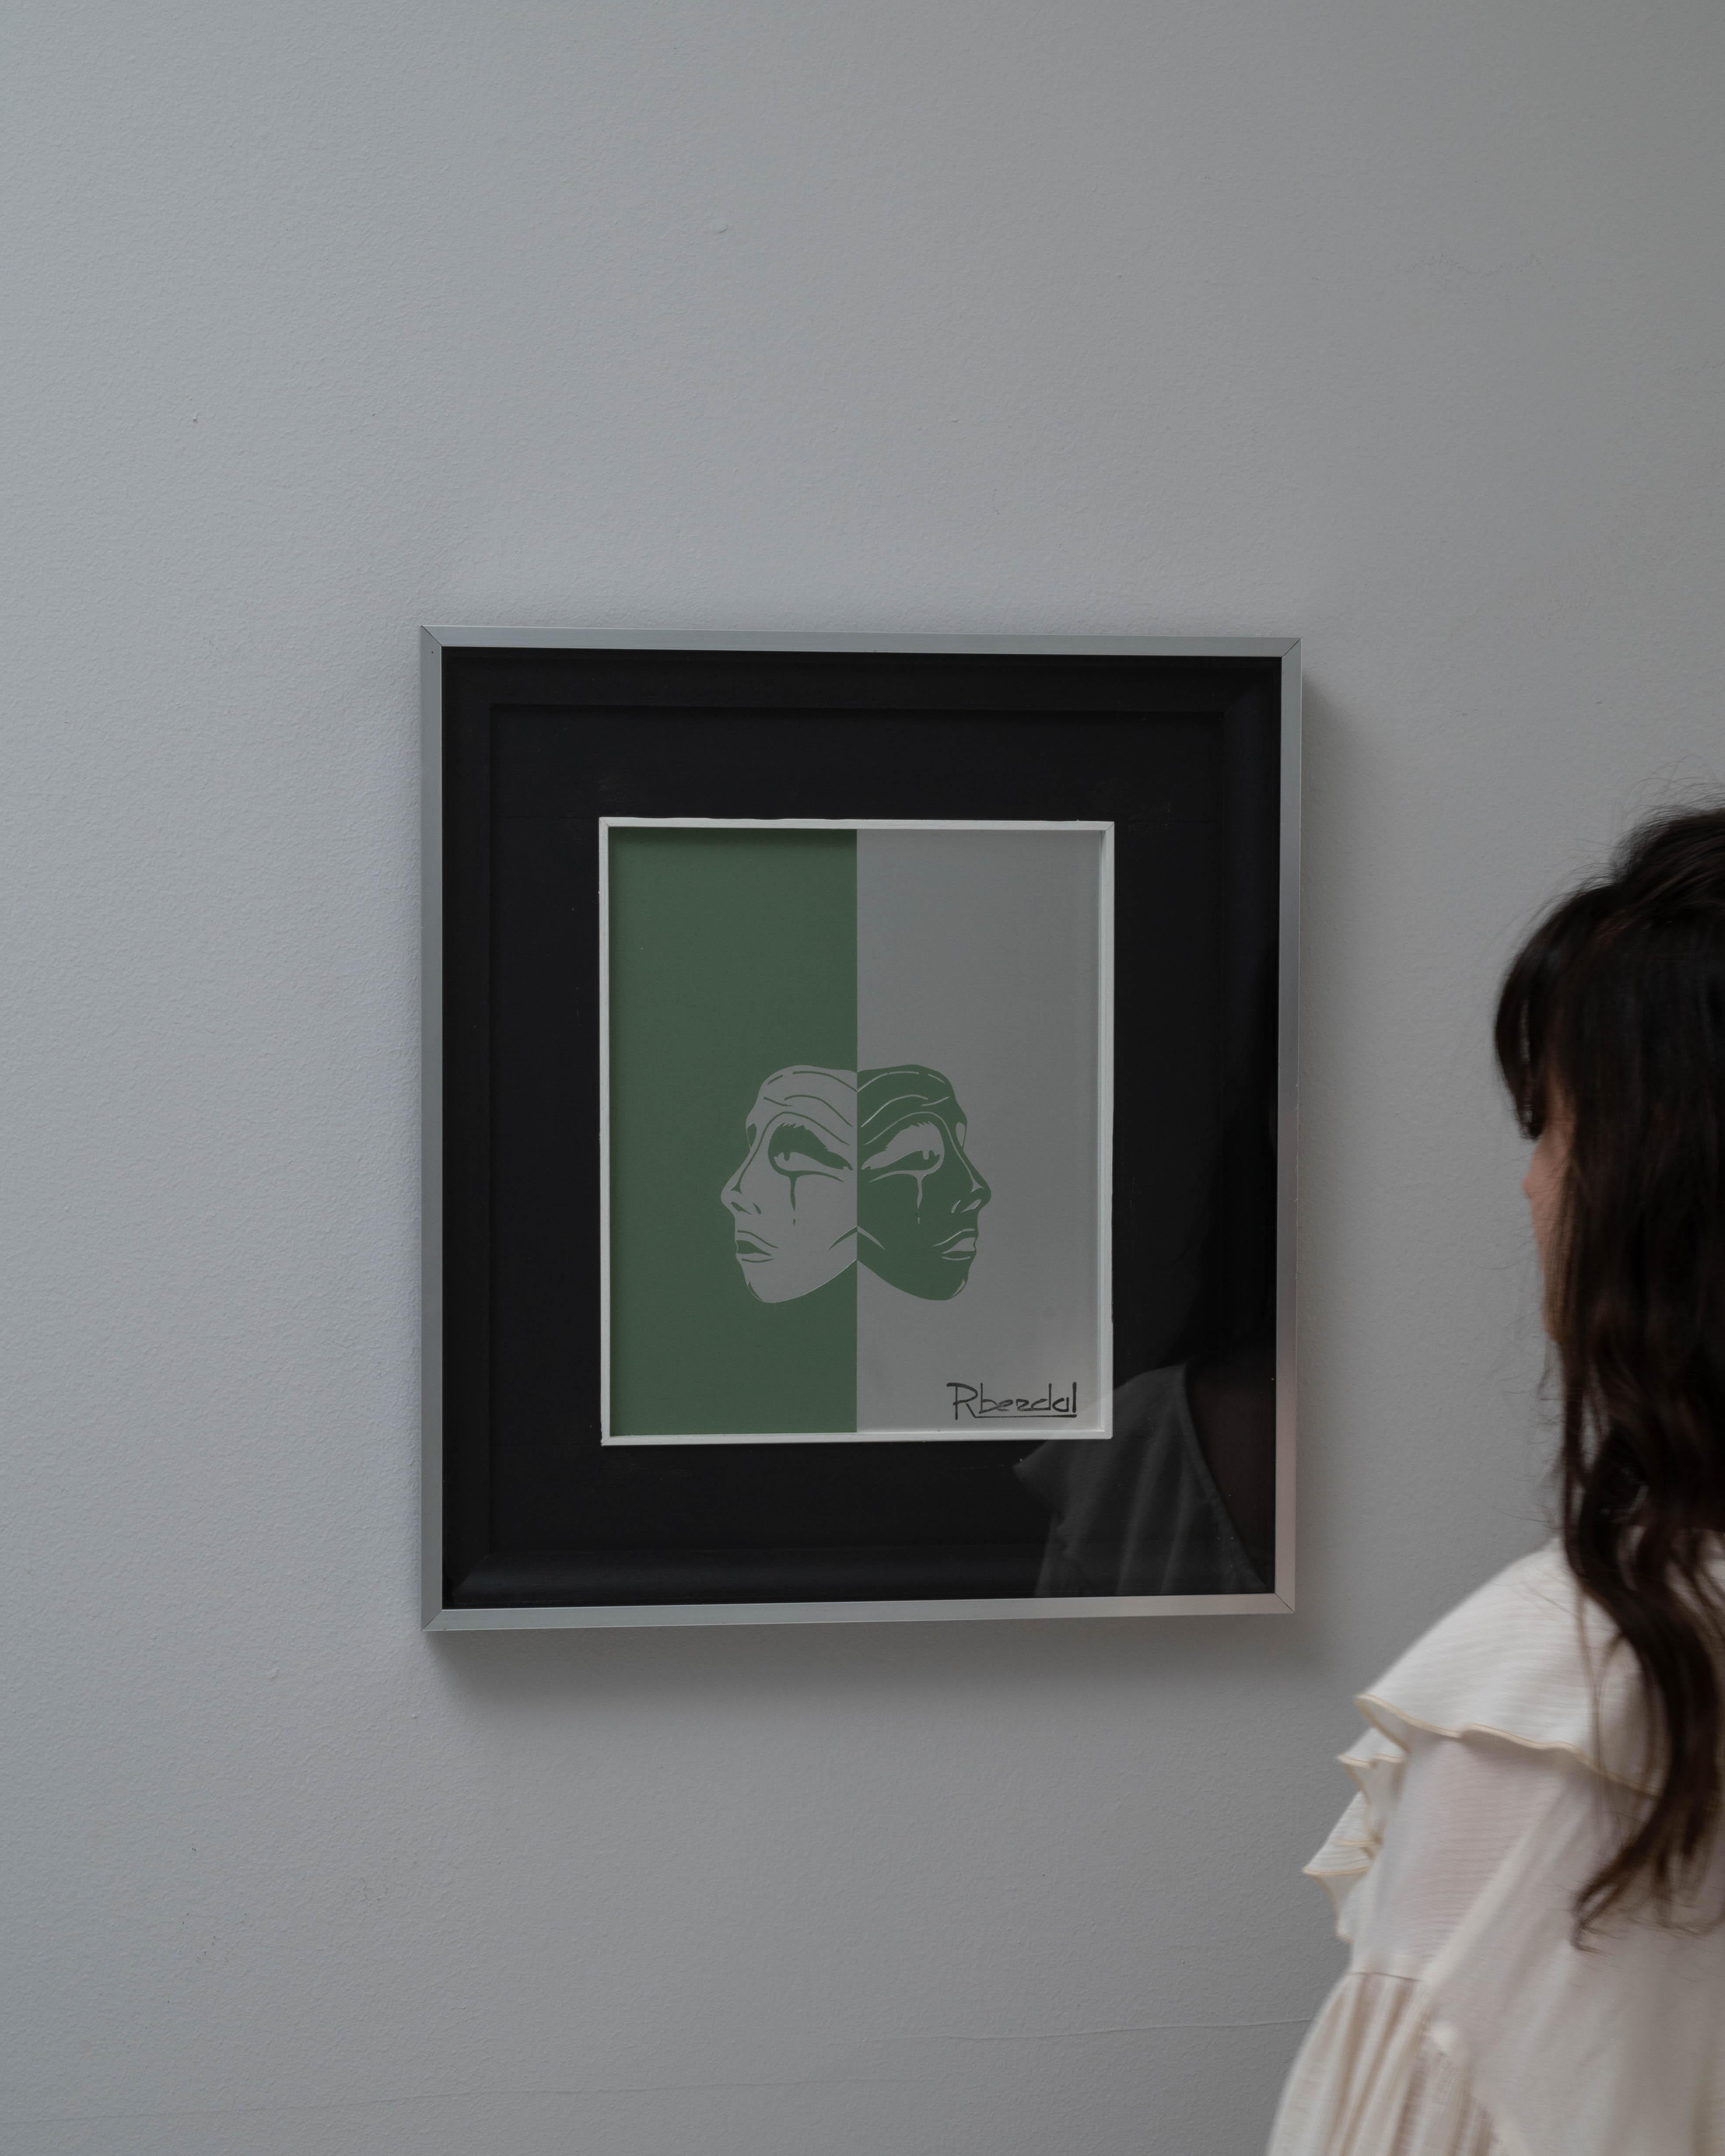 Explorez l'élégance et la simplicité de l'art belge du XXe siècle avec cette pièce sereine de René Berdal. Présentée dans un cadre noir élégant, cette œuvre d'art présente un portrait à double visage sur un fond vert paisible, symbolisant la dualité